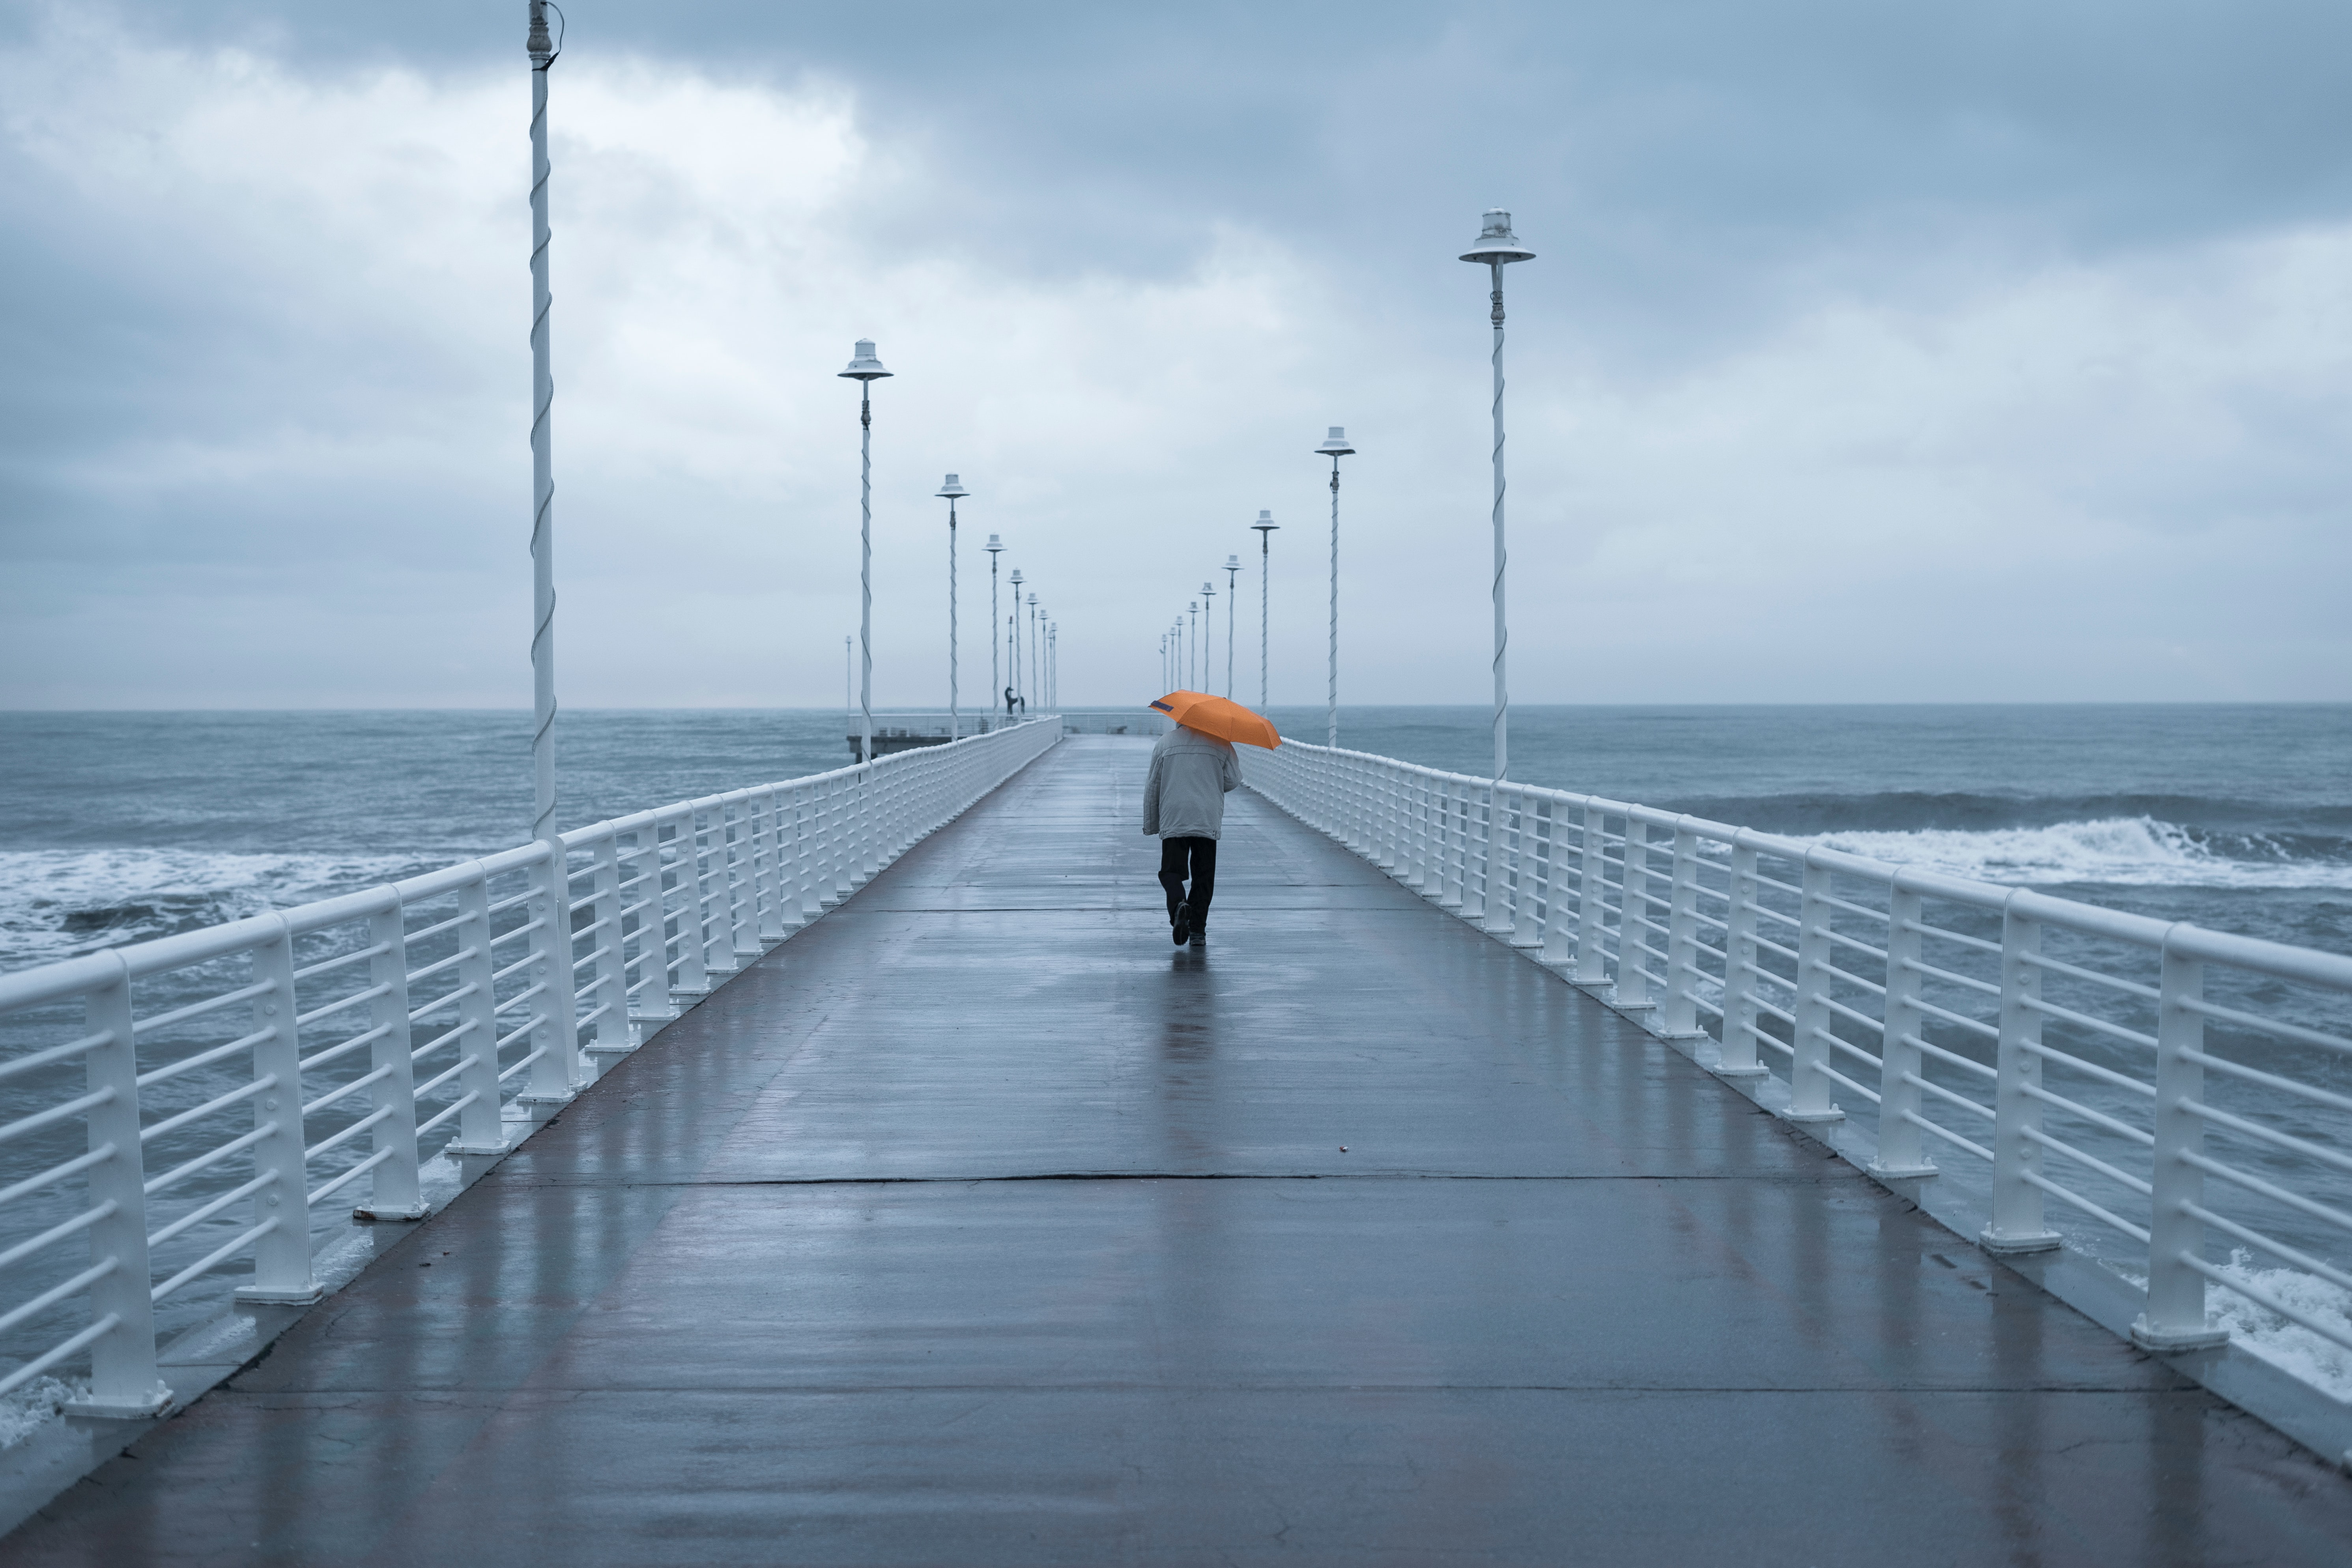 alone, pier, miscellaneous, miscellanea, human, person, loneliness, lonely, umbrella